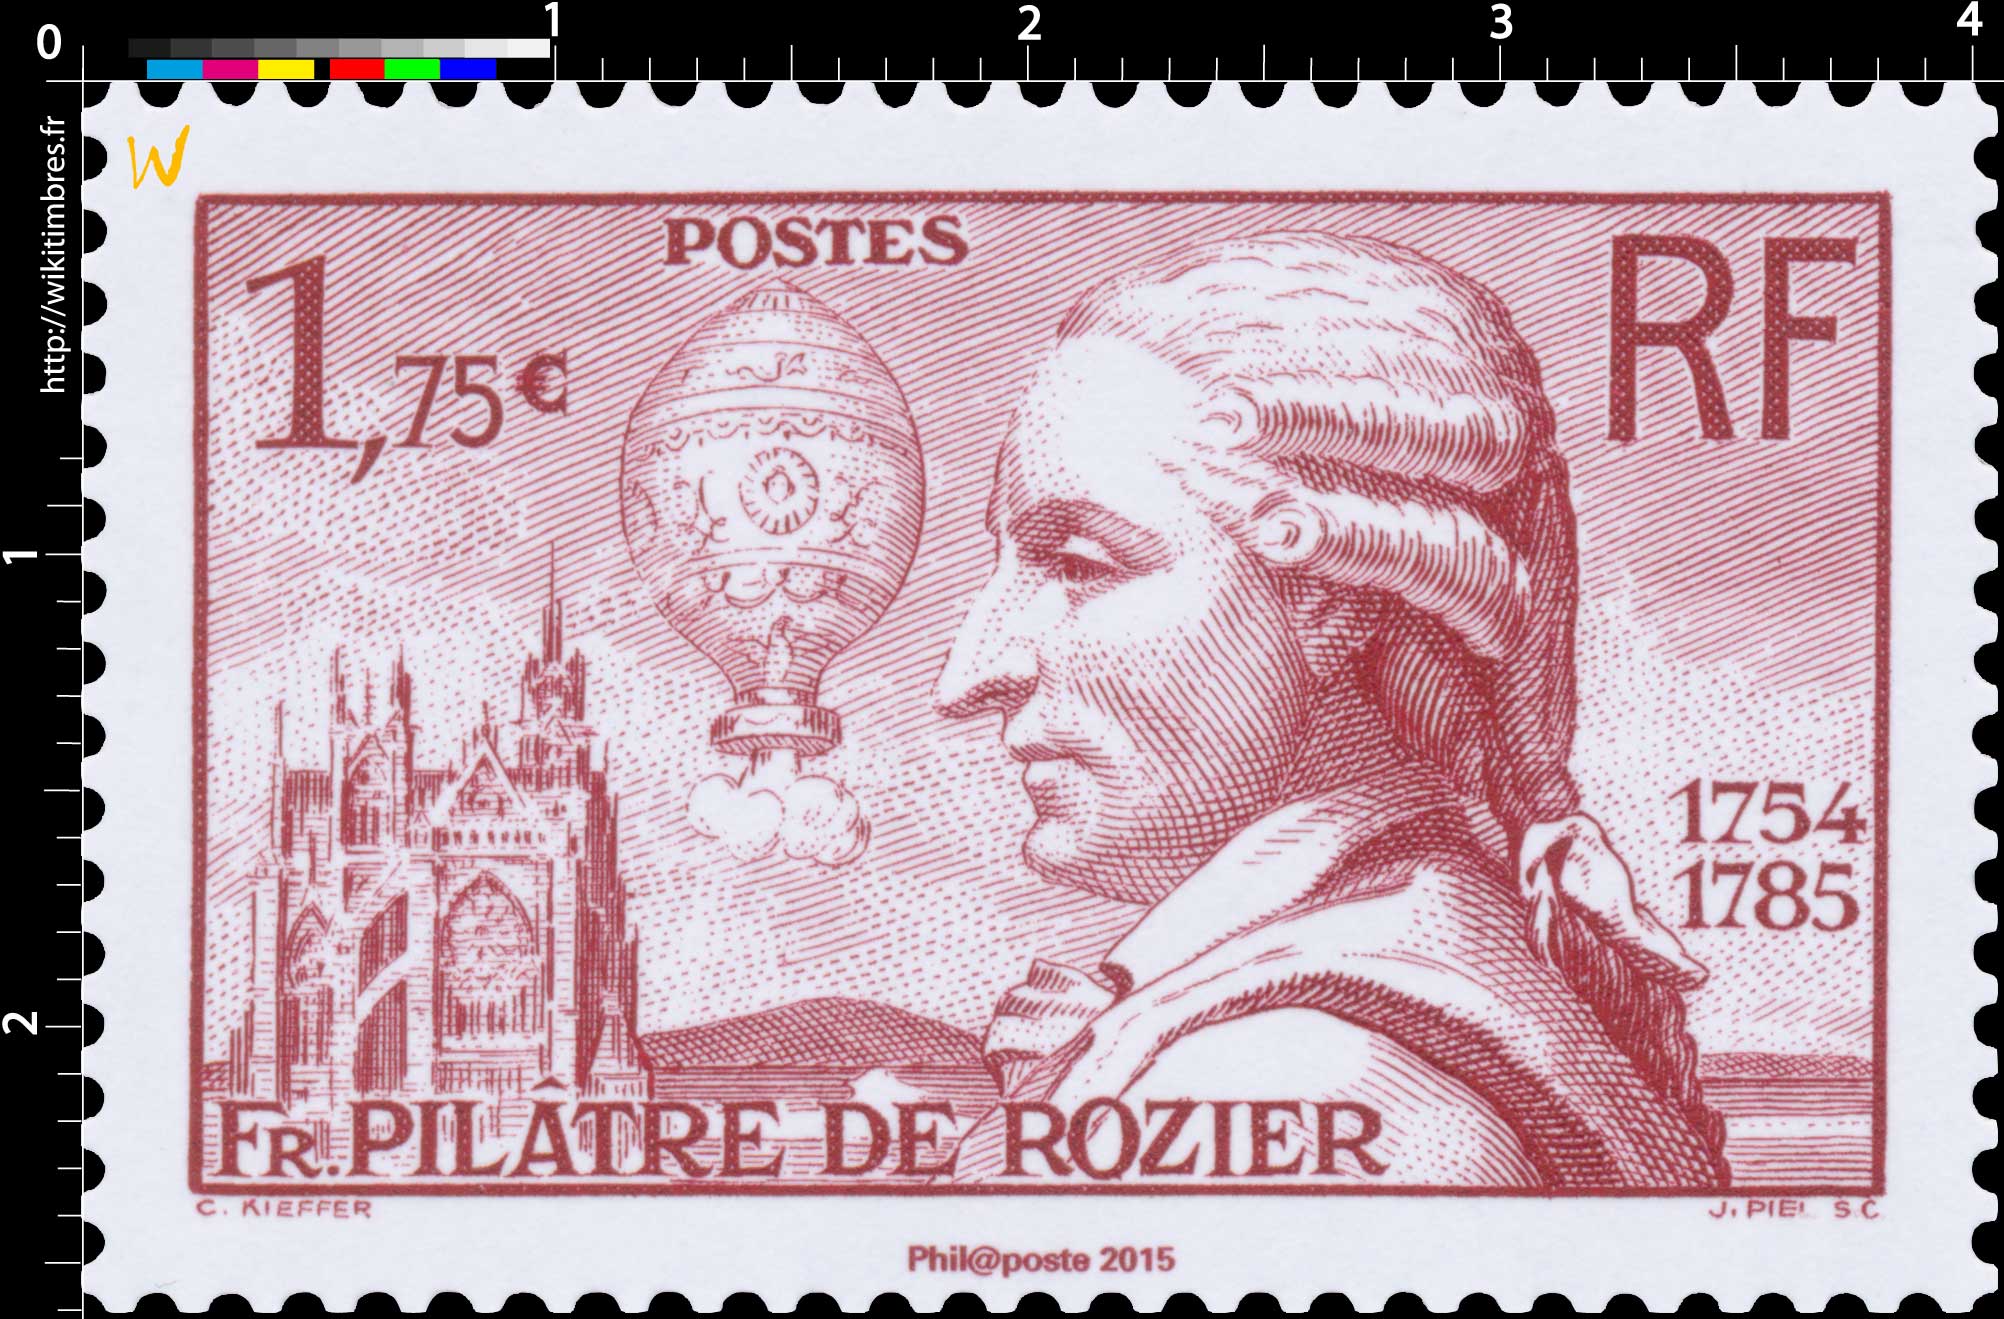 2015 Fr. Pilâtre de Rozier 1754-1785